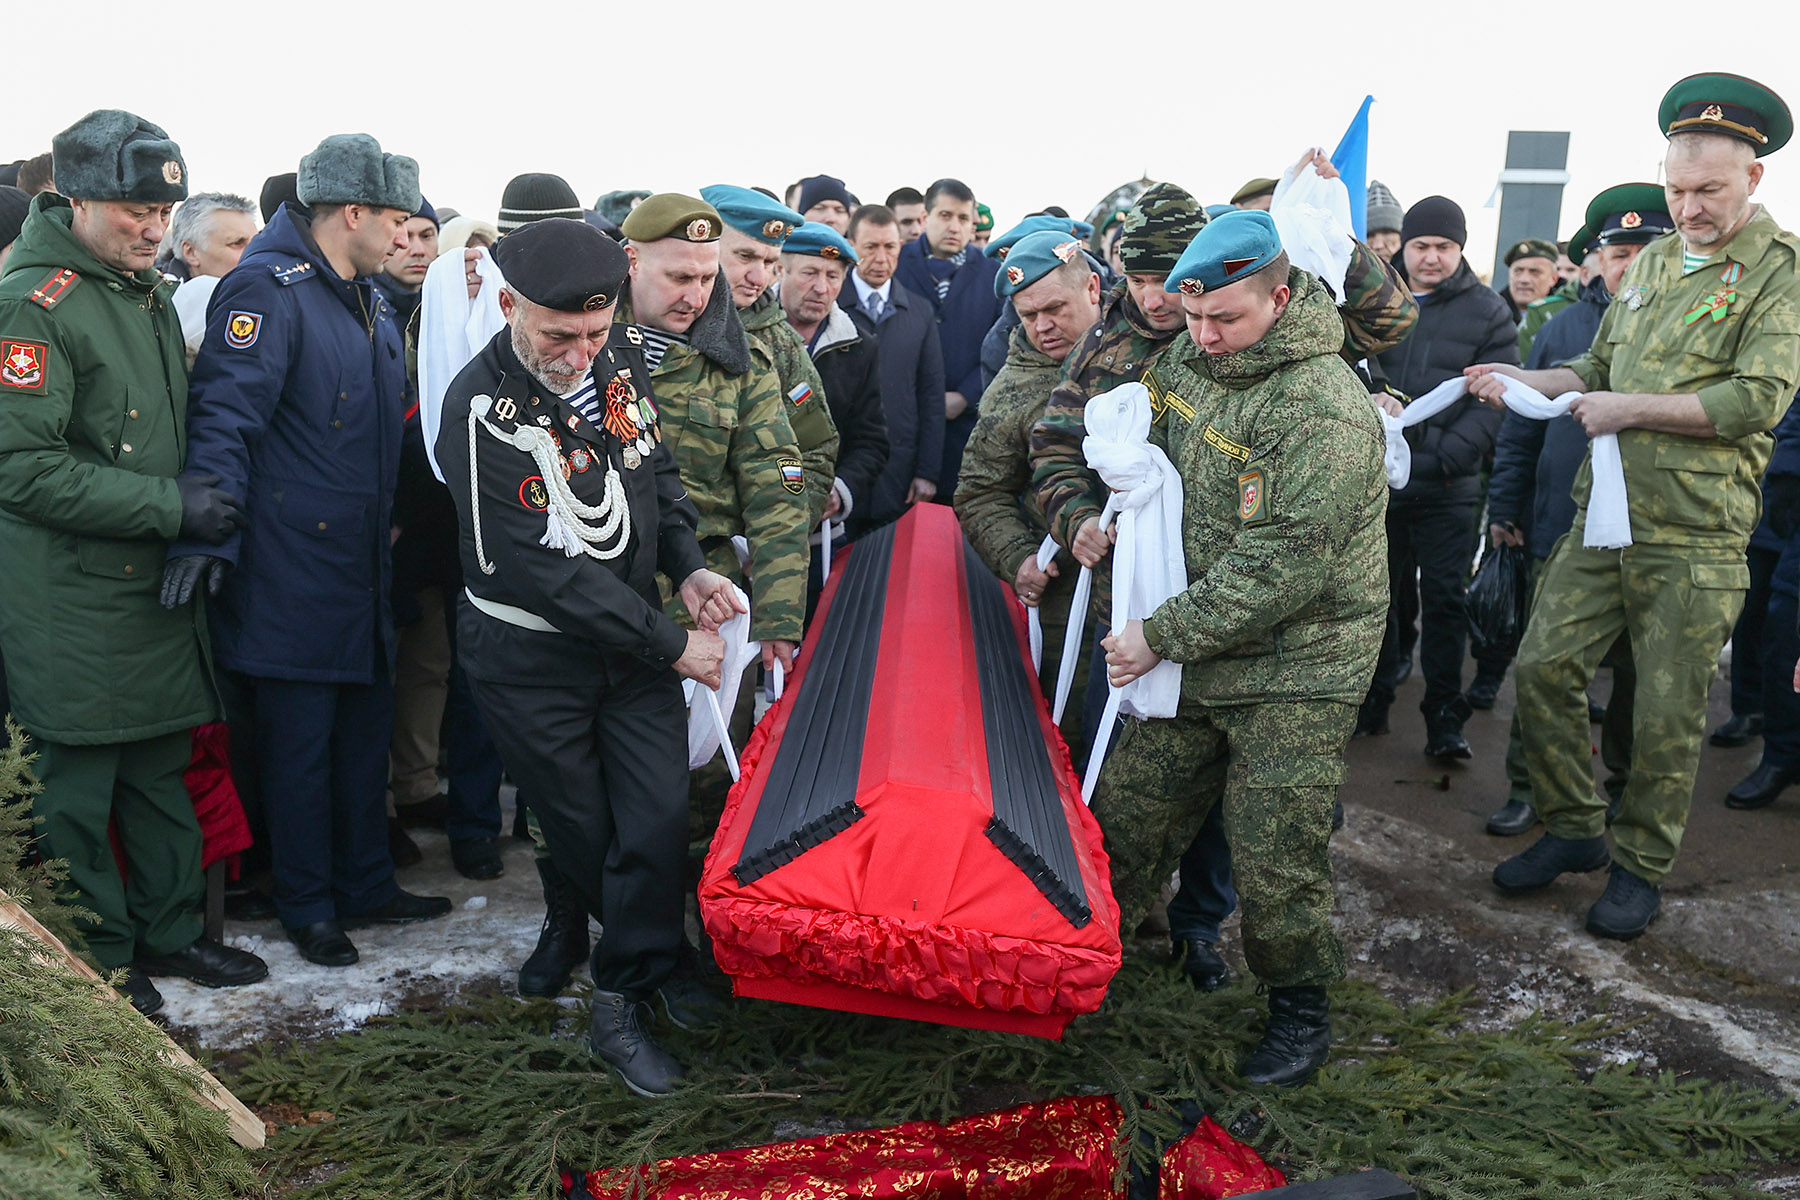 Сколько неофициально погибло на украине. Похороны Ильнура Сибгатуллина. Погибшие солдаты России не а Украине. Груз 200 погибшие солдаты РФ.